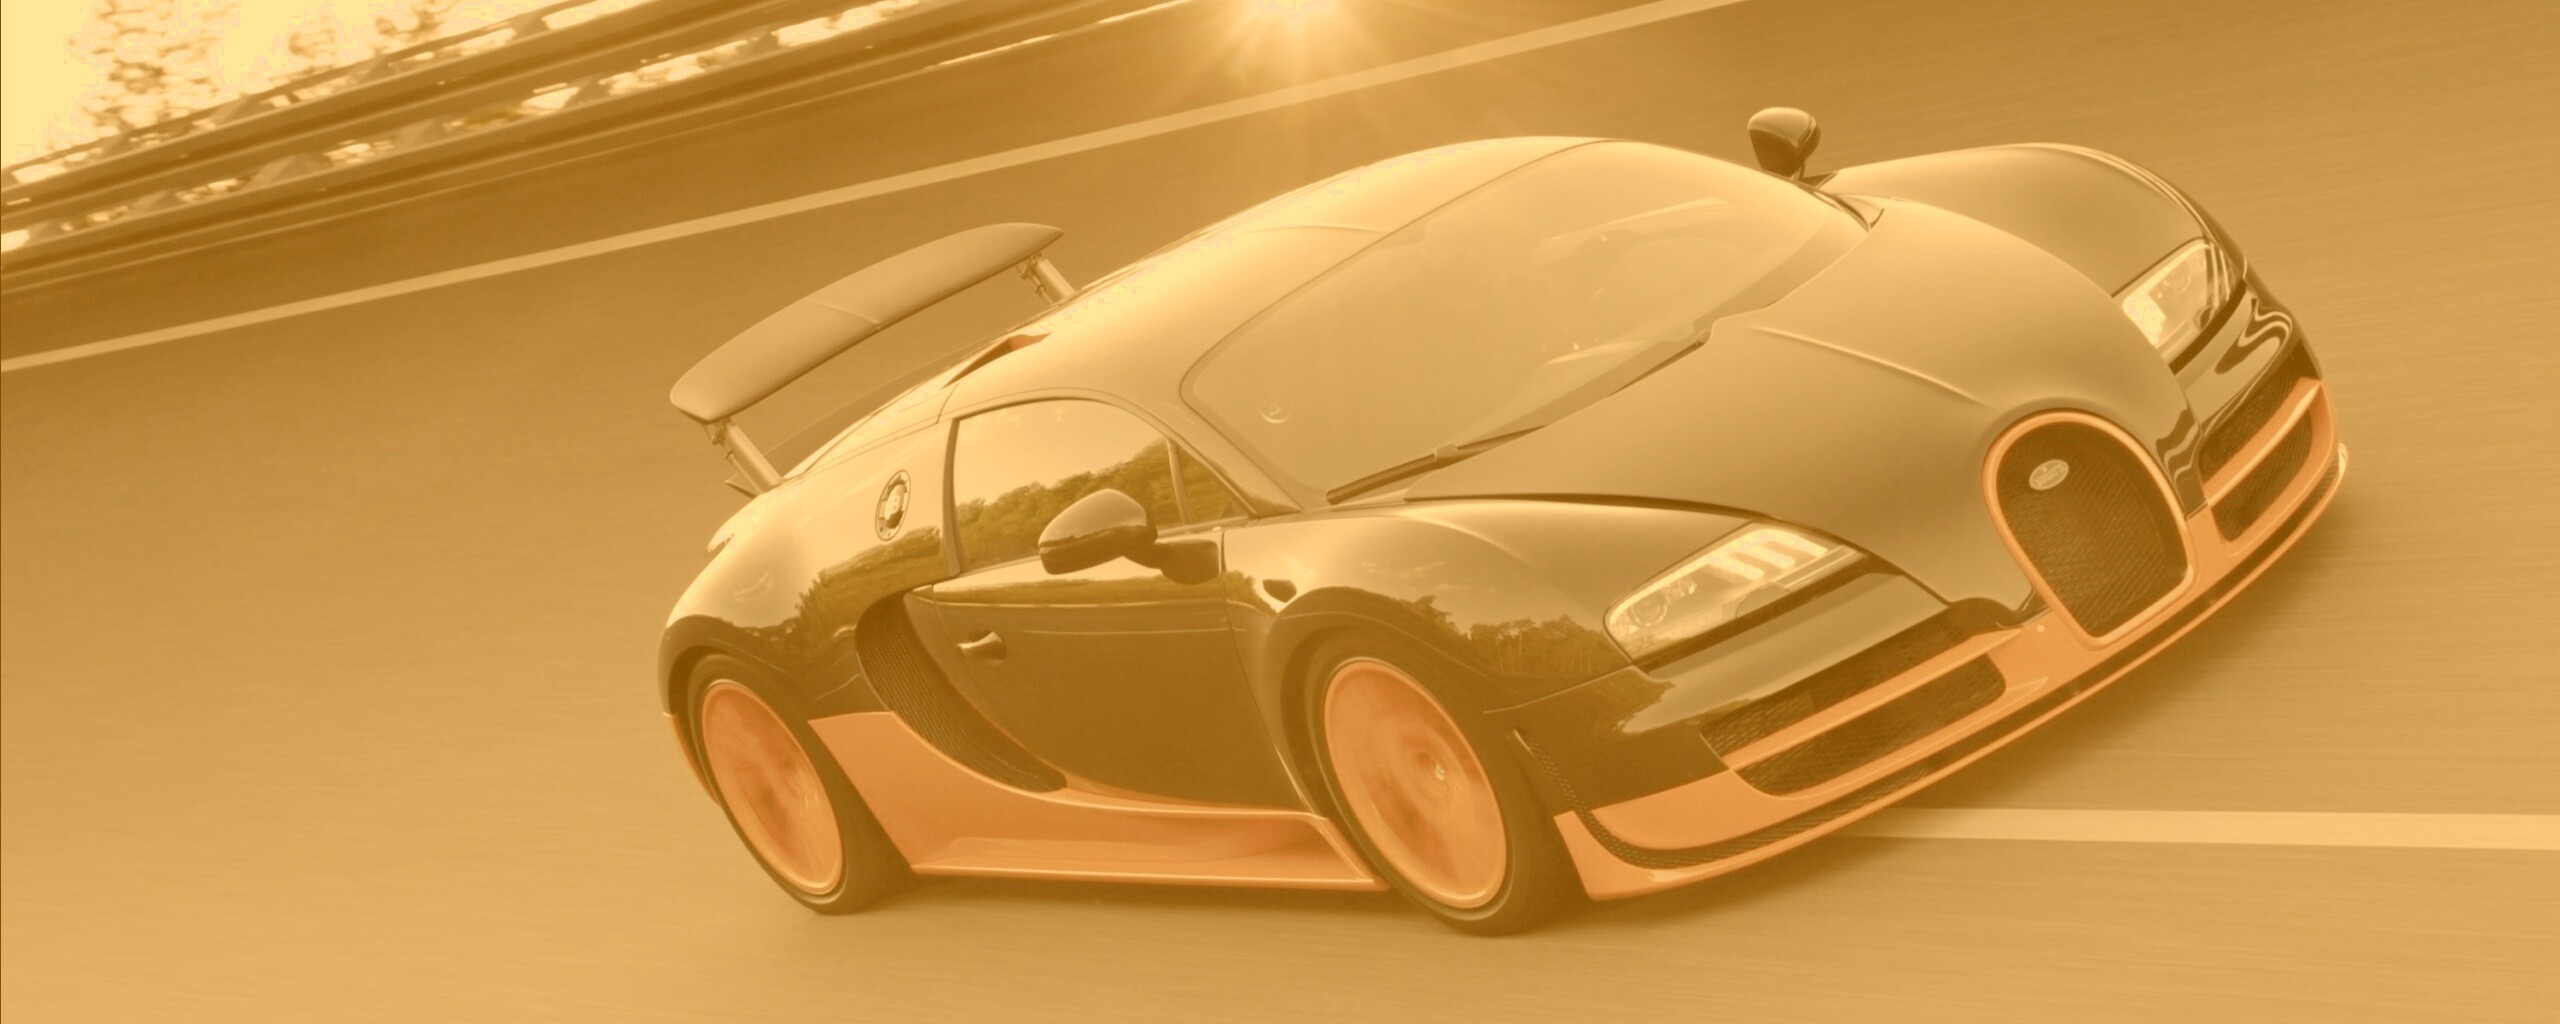 Bugatti veyron бесплатно